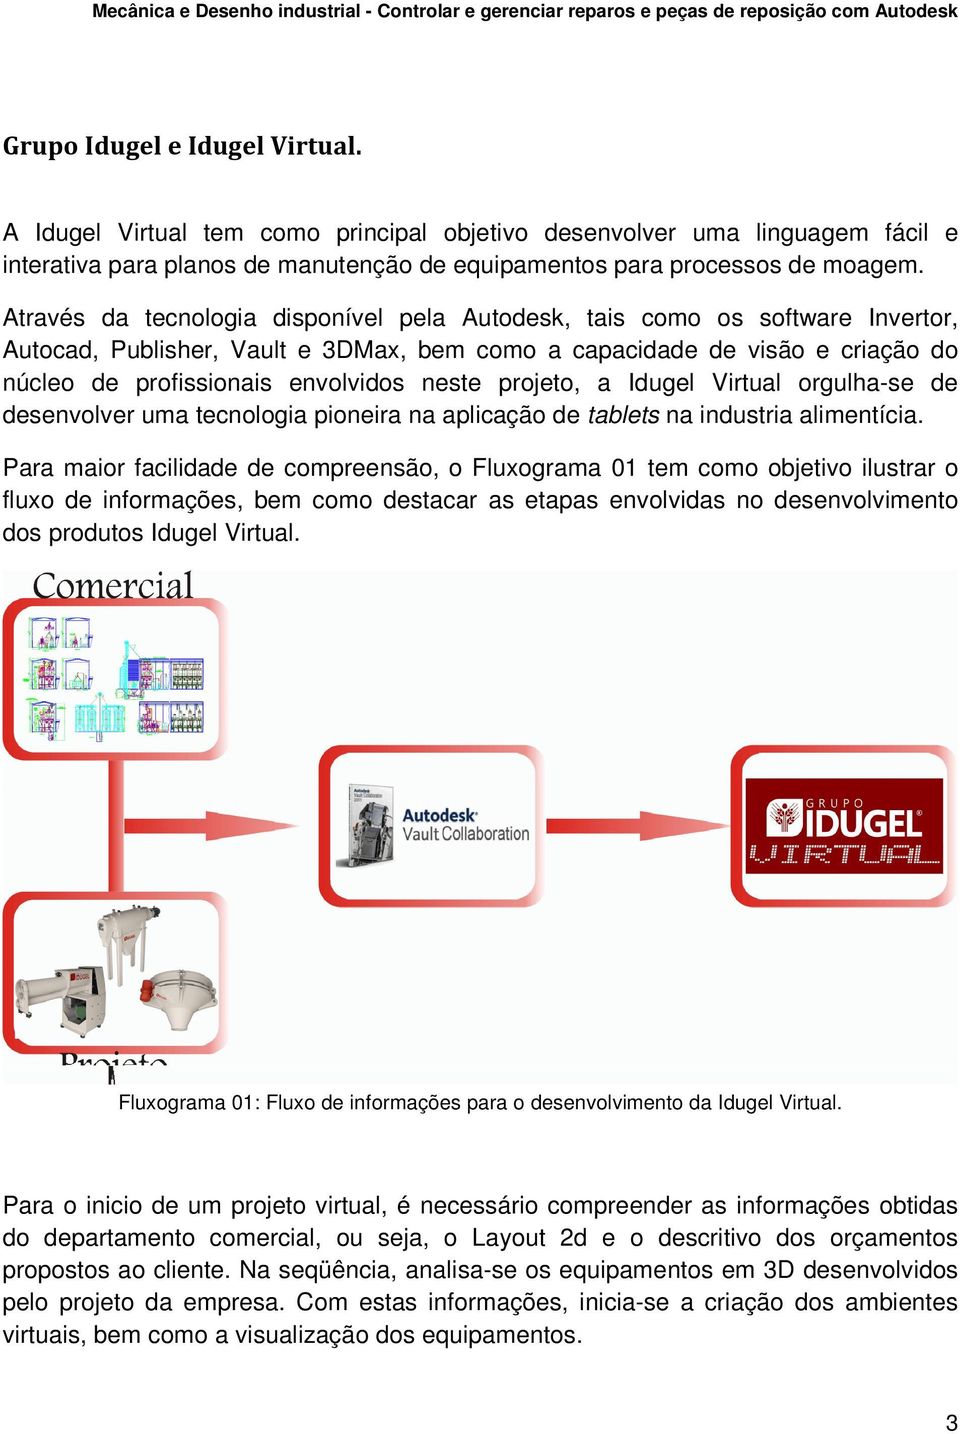 projeto, a Idugel Virtual orgulha-se de desenvolver uma tecnologia pioneira na aplicação de tablets na industria alimentícia.